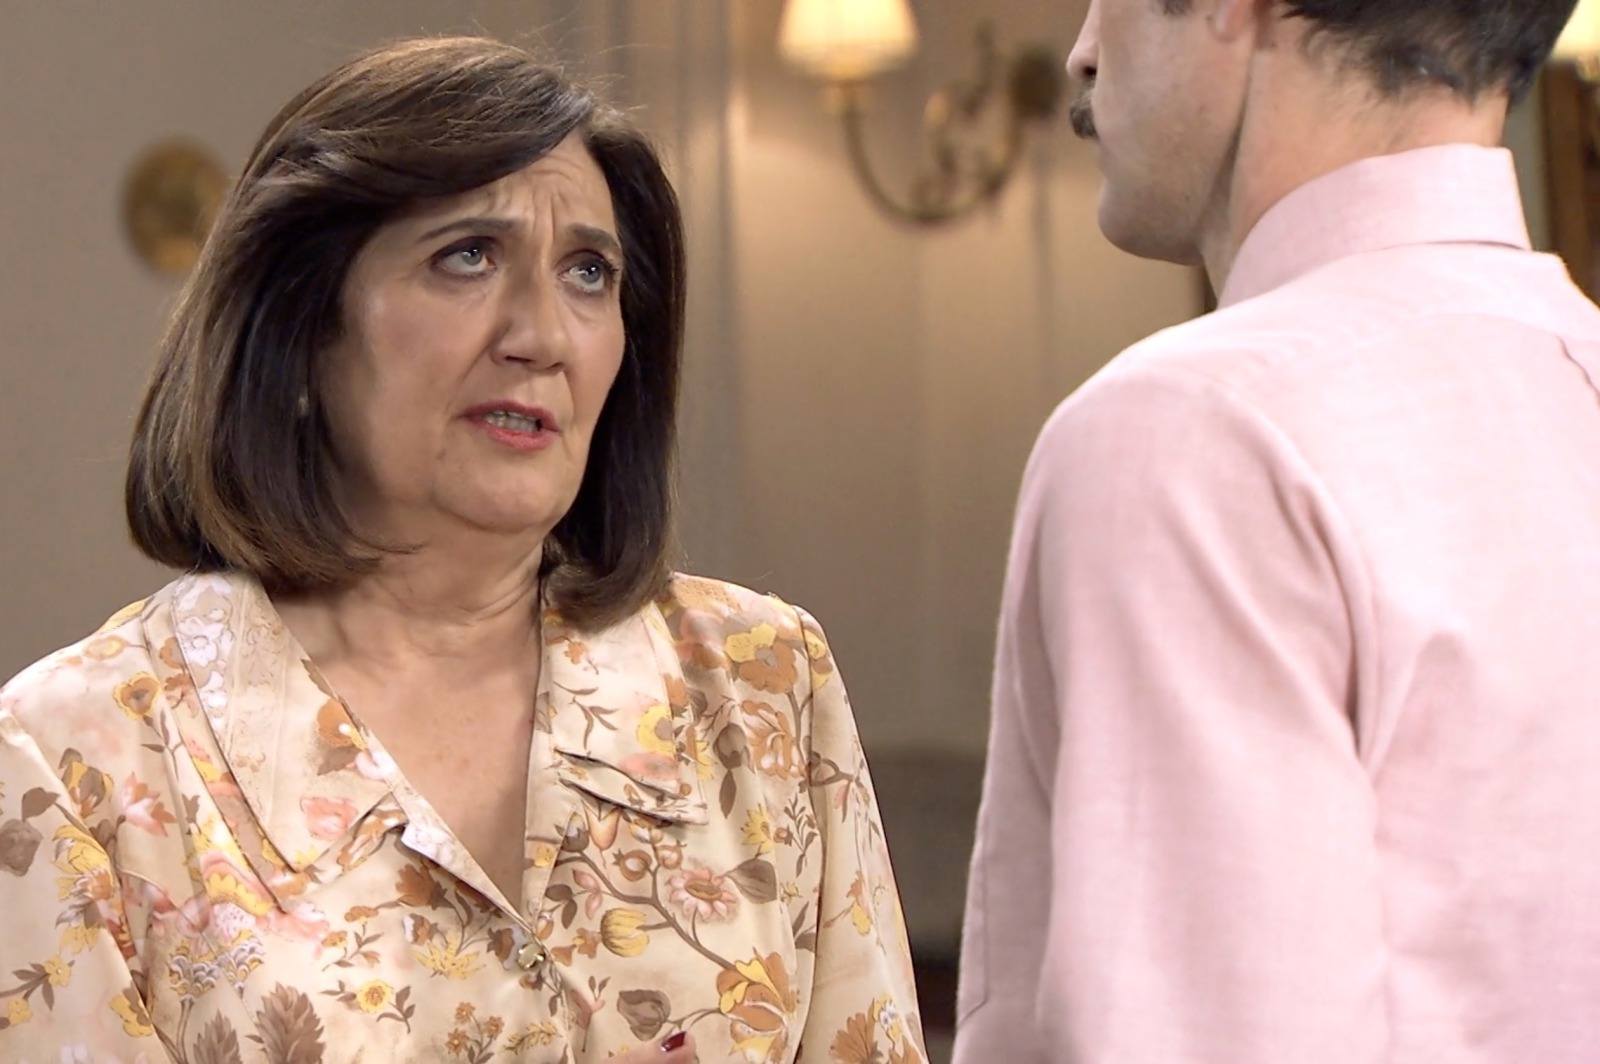 Carmen ha percibido que Coral está muy distante con Raúl y aconseja a su hijo que sea comprensivo y paciente